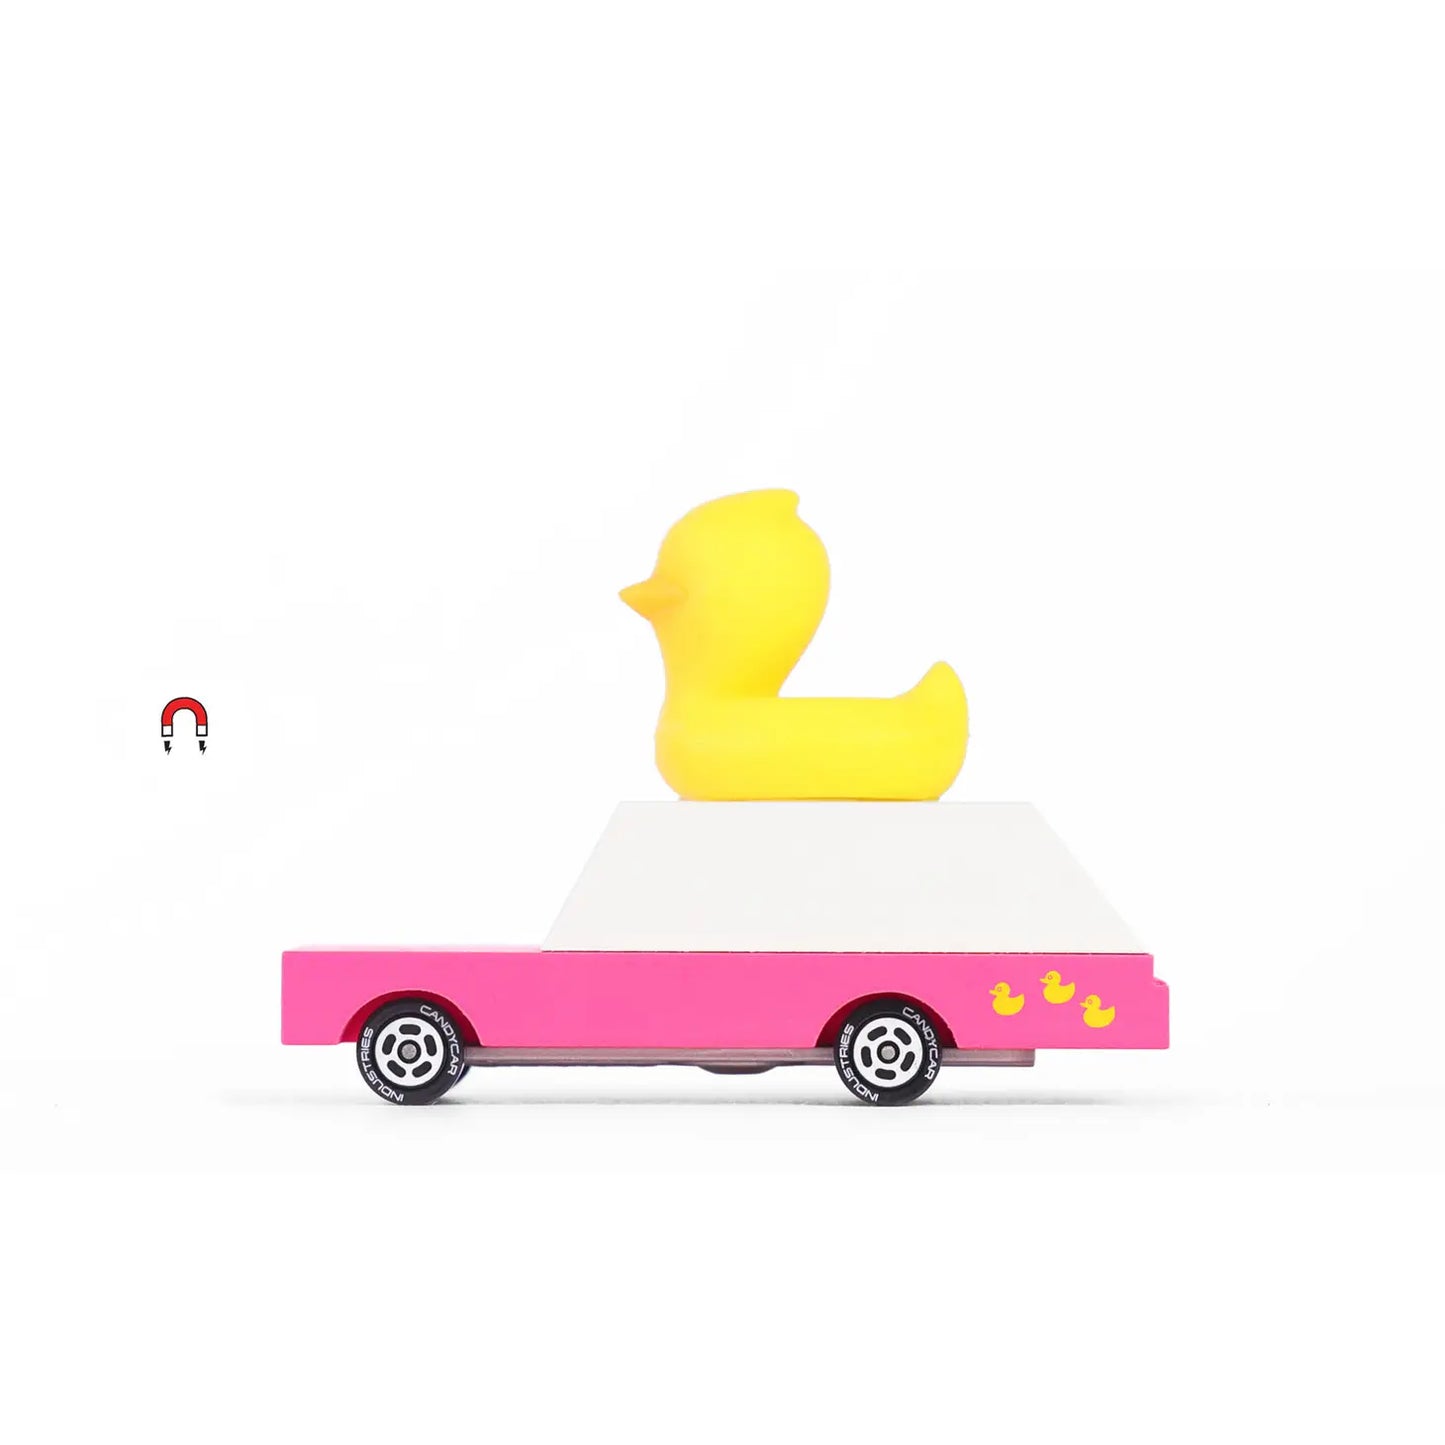 Candy Lab Duckie Wagon